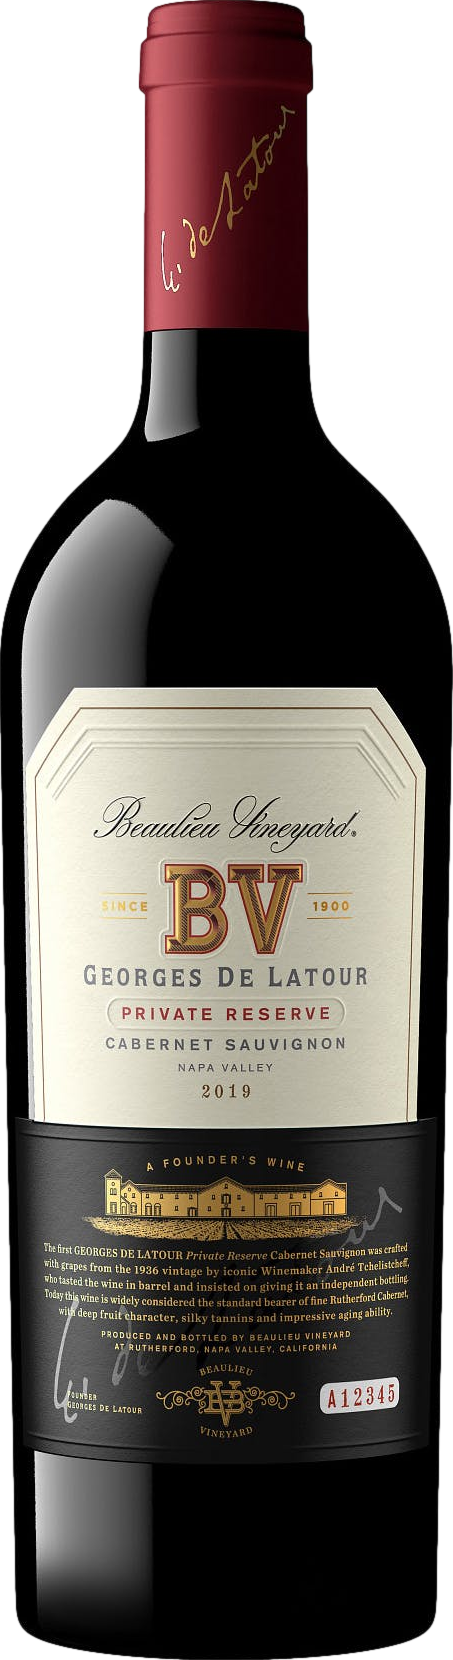 Beaulieu Vineyard Georges de Latour Privat Reserve 2019